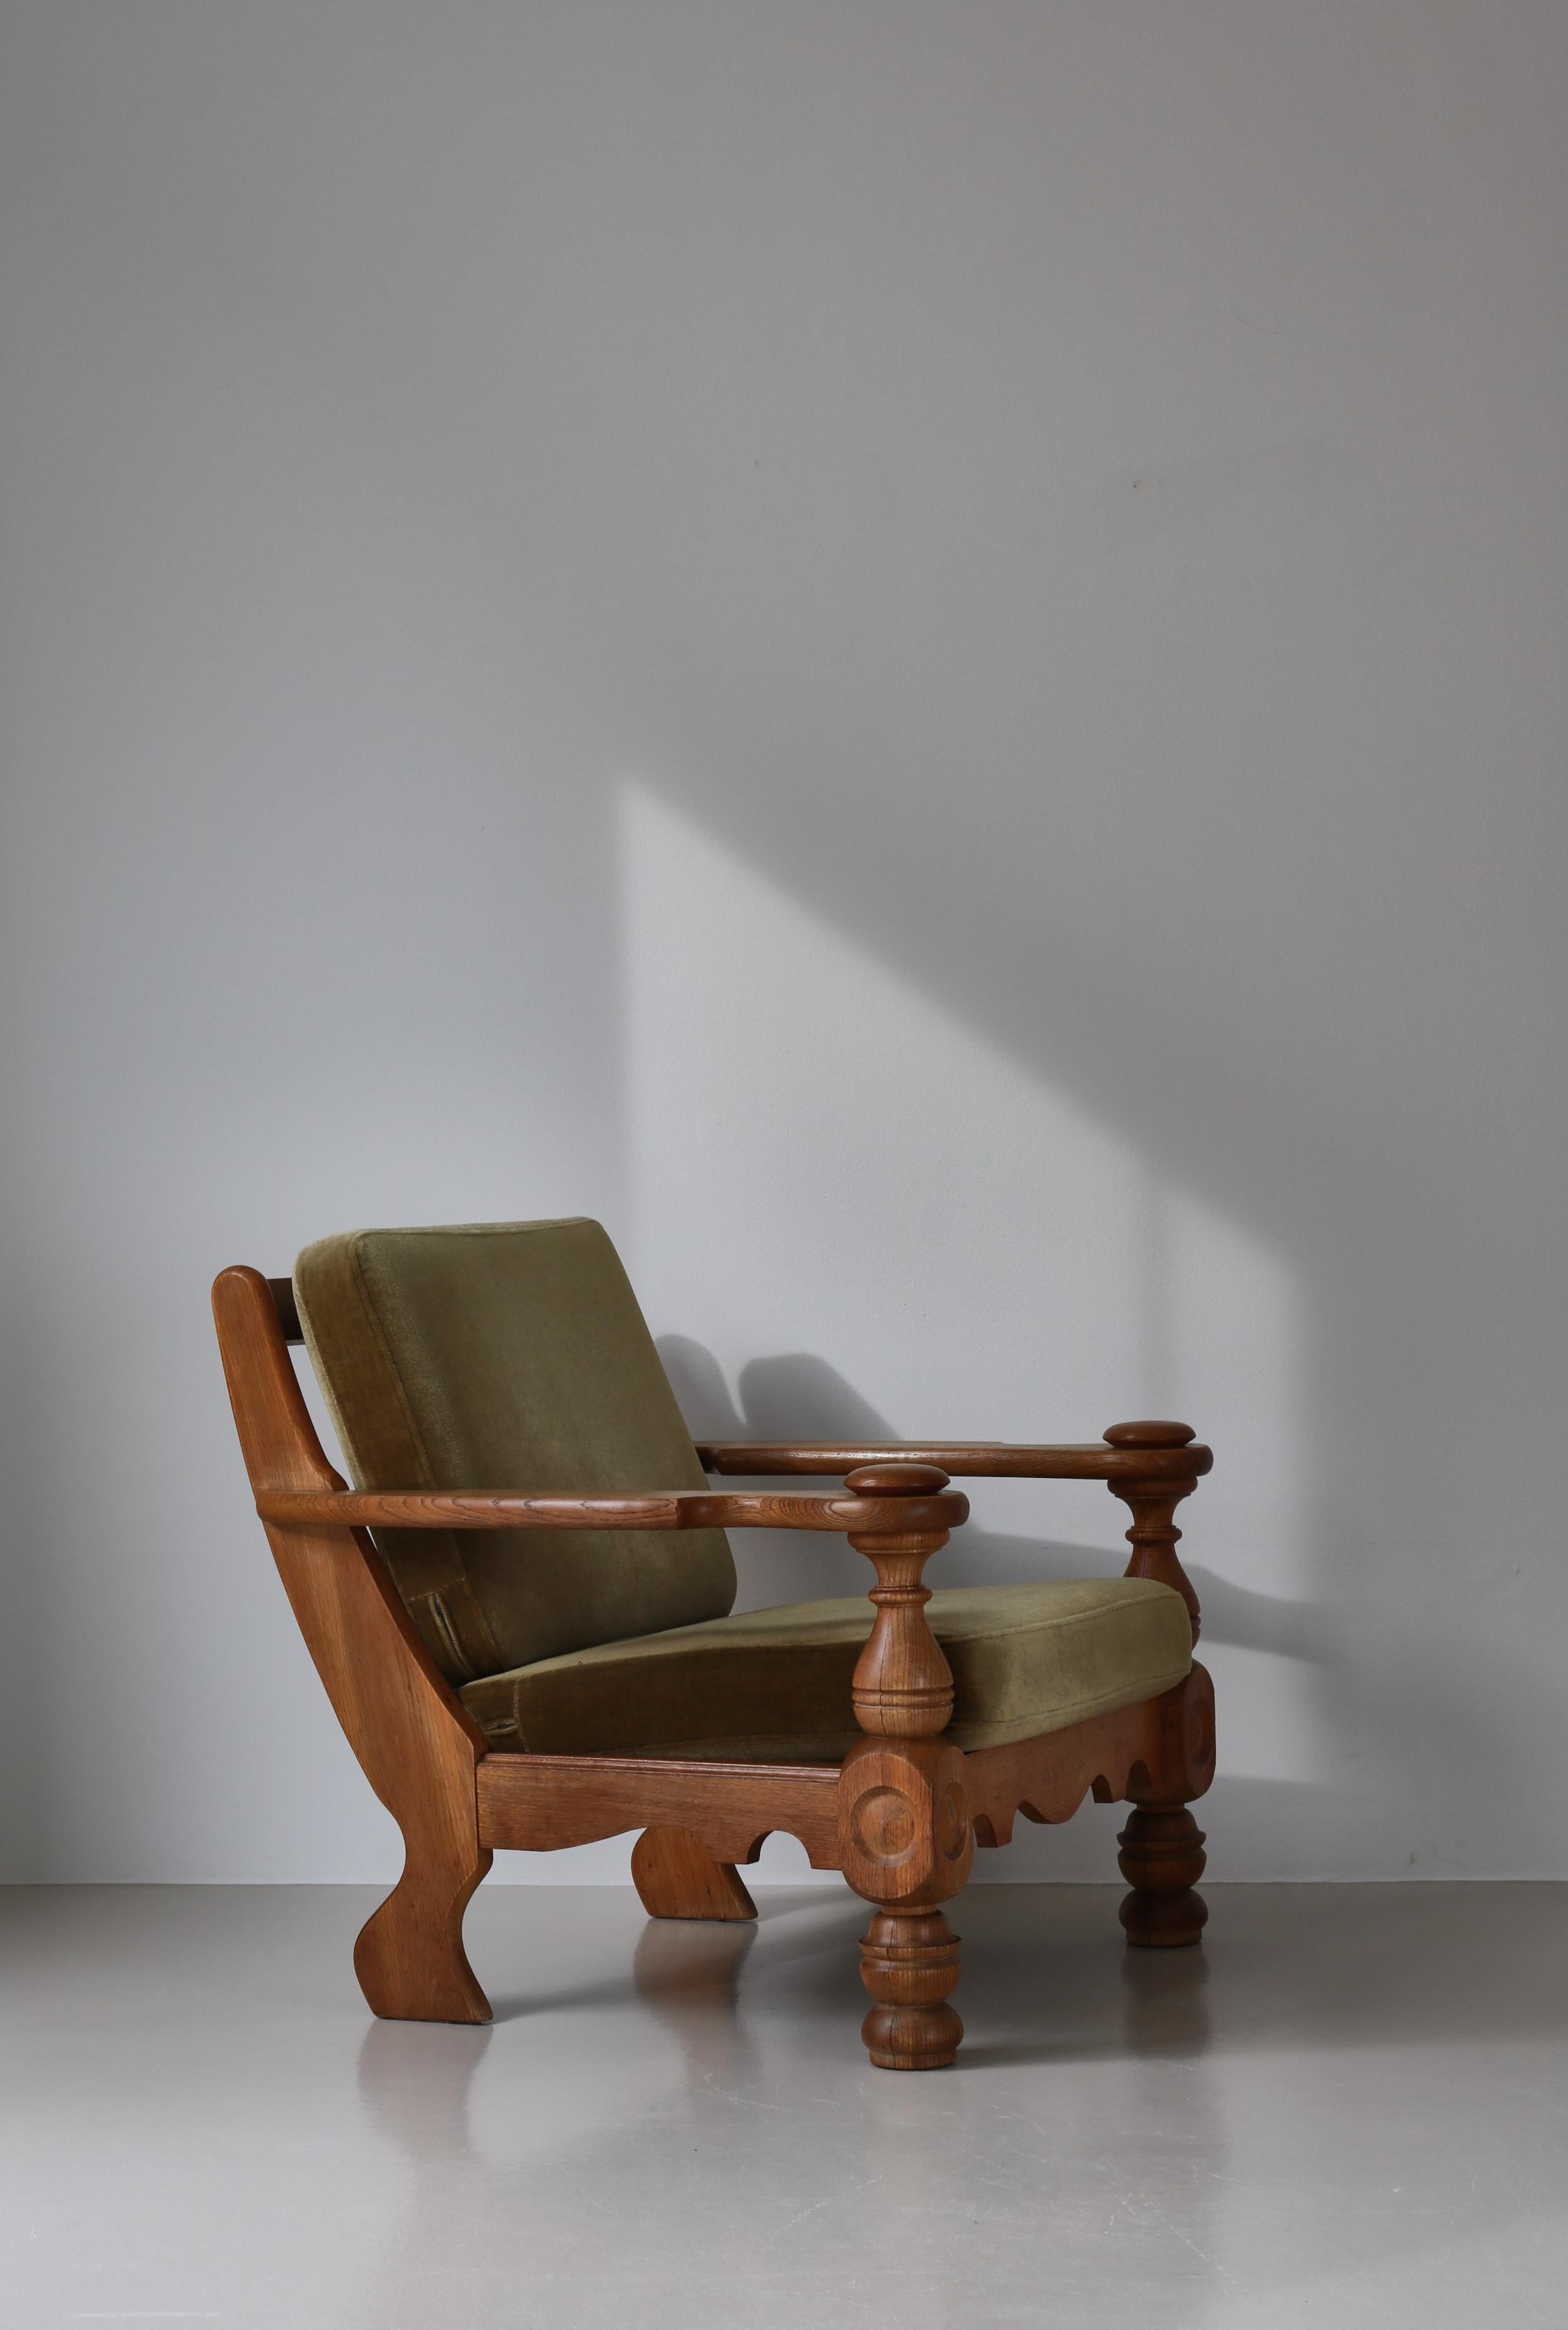 Très charmant et rustique grand fauteuil facile conçu par Henry Kjærnulf et fabriqué dans les années 1950. La chaise est fabriquée en chêne massif et les coussins sont recouverts de mohair vert. Grand confort d'assise.
Le designer et architecte